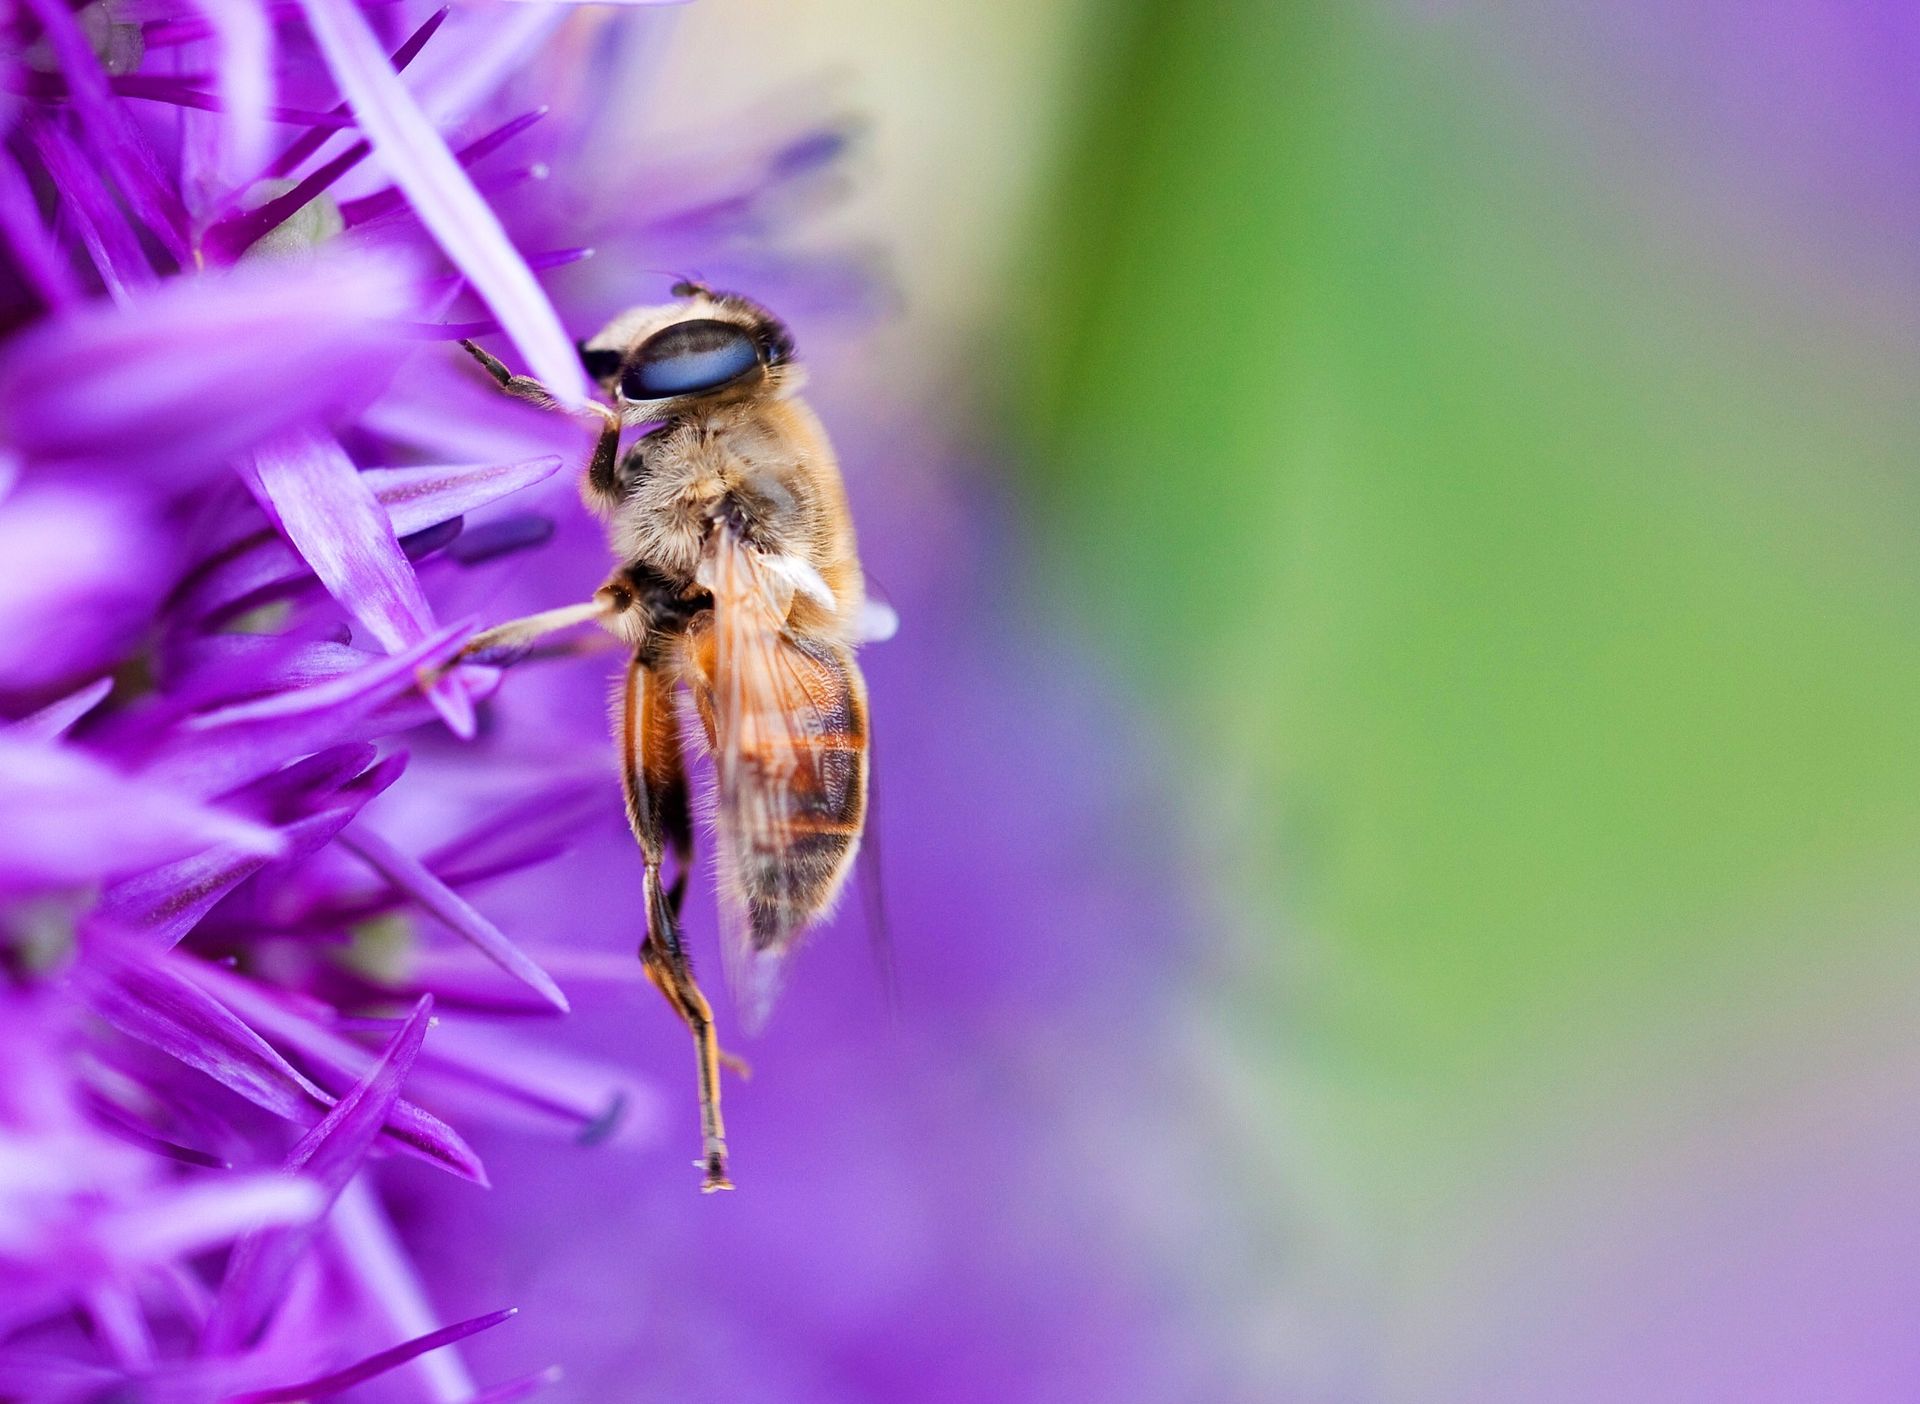 A bee on a purple flower.